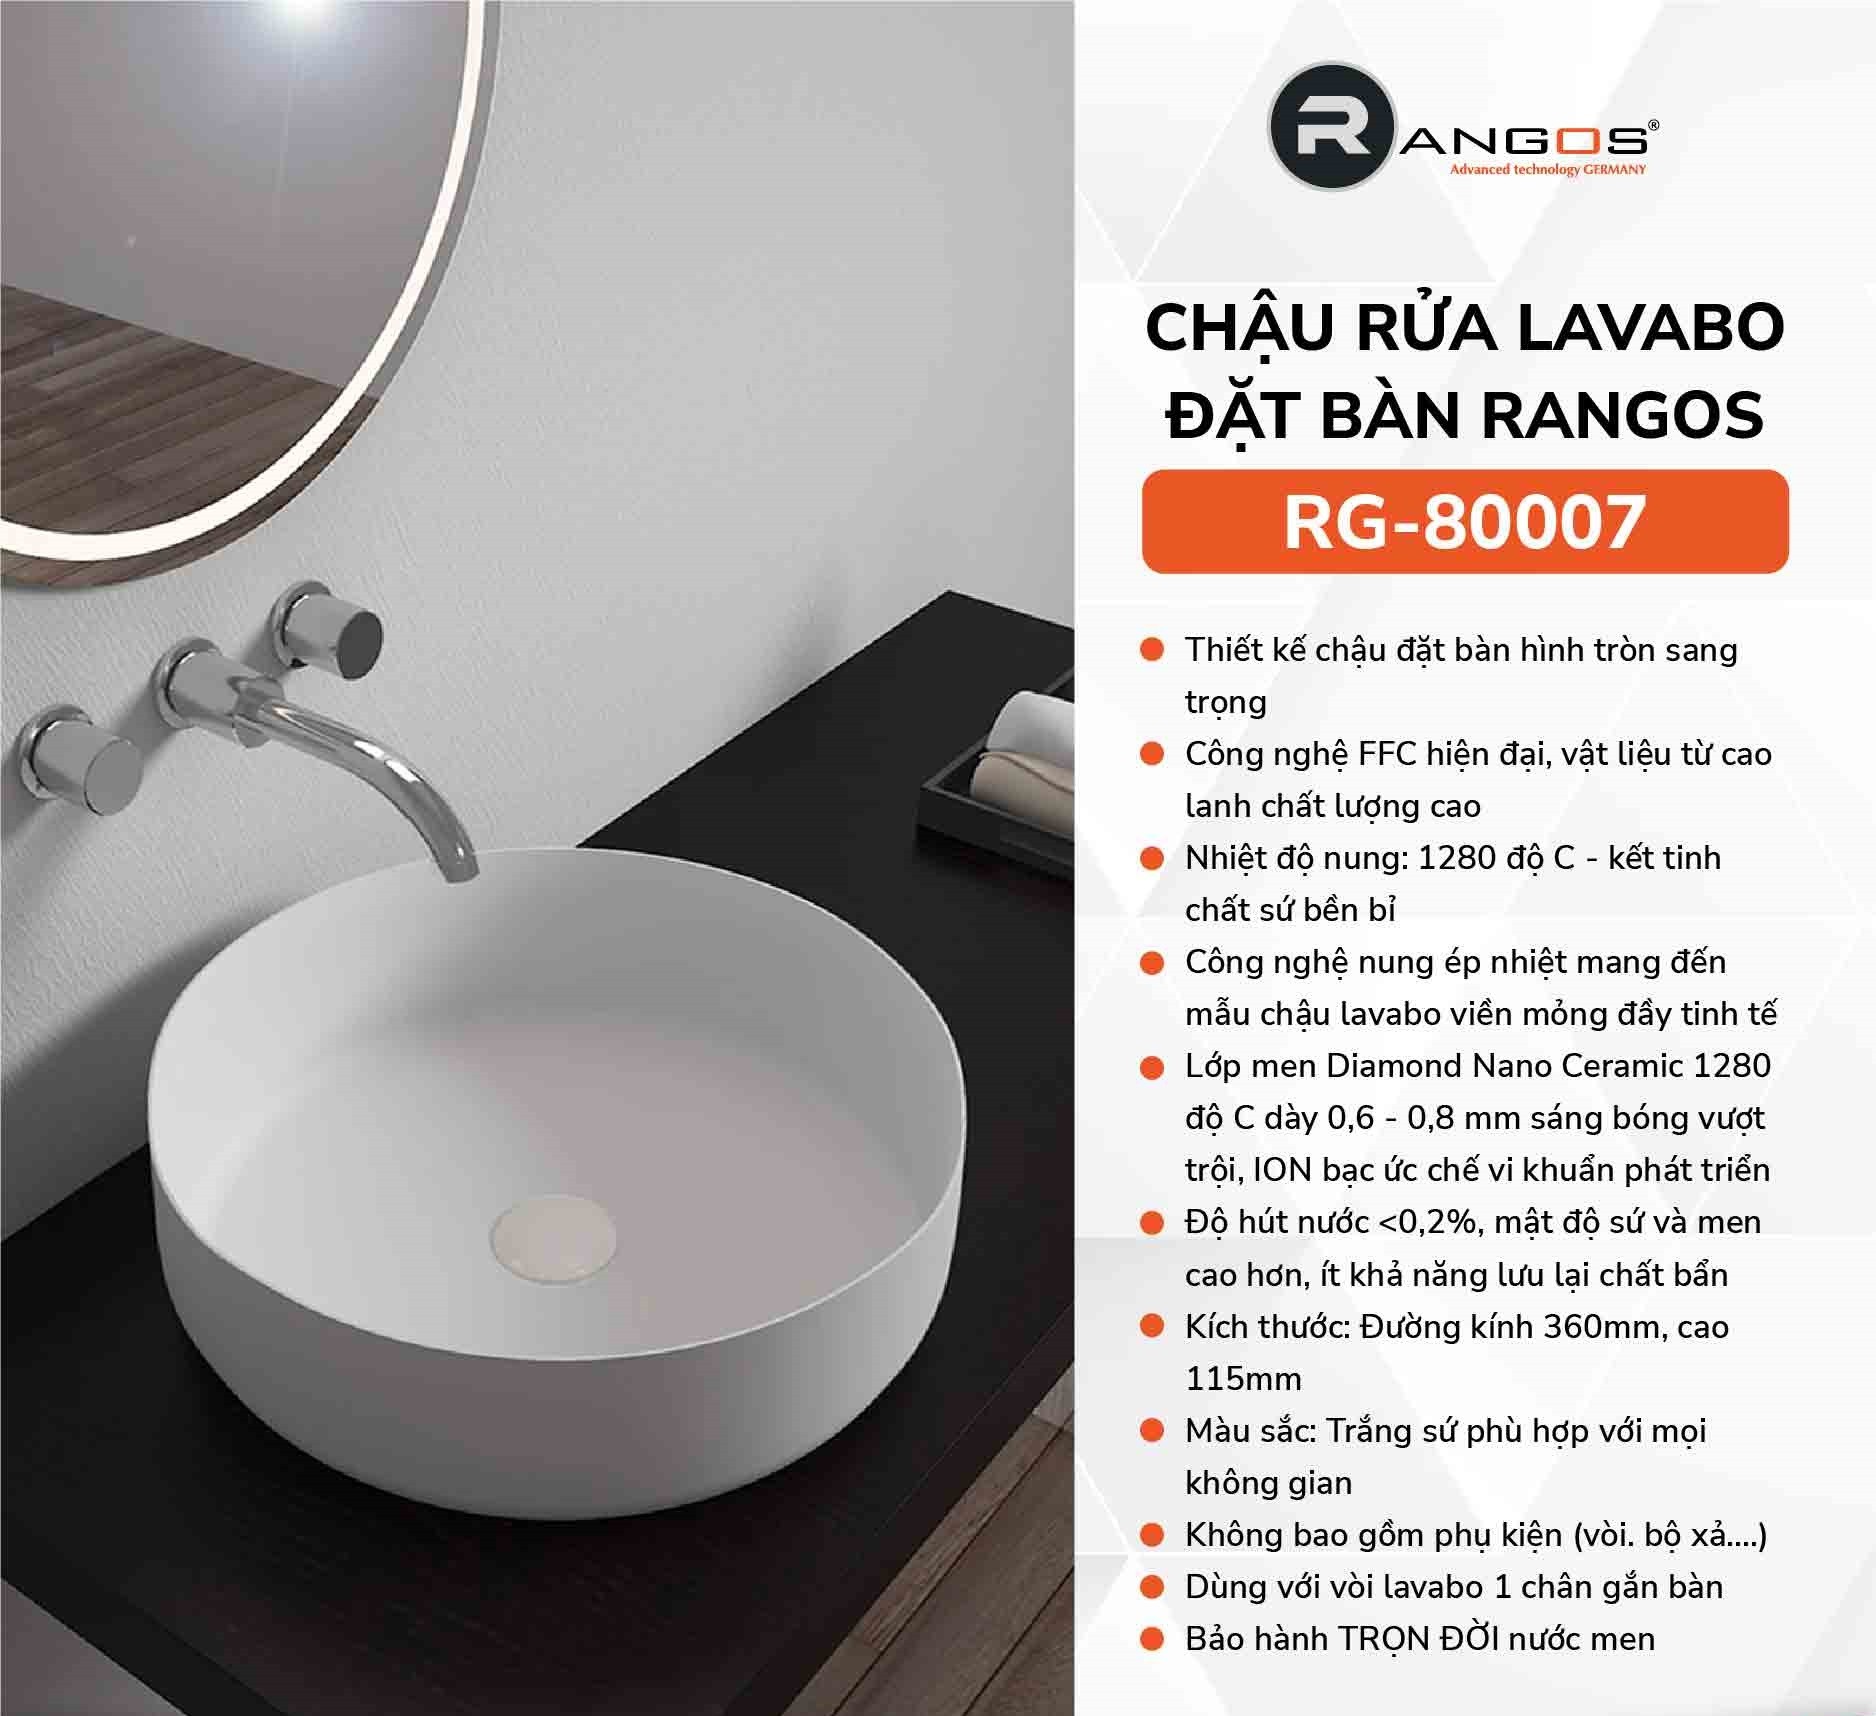 Chậu Rửa Lavabo Rangos RG-80007